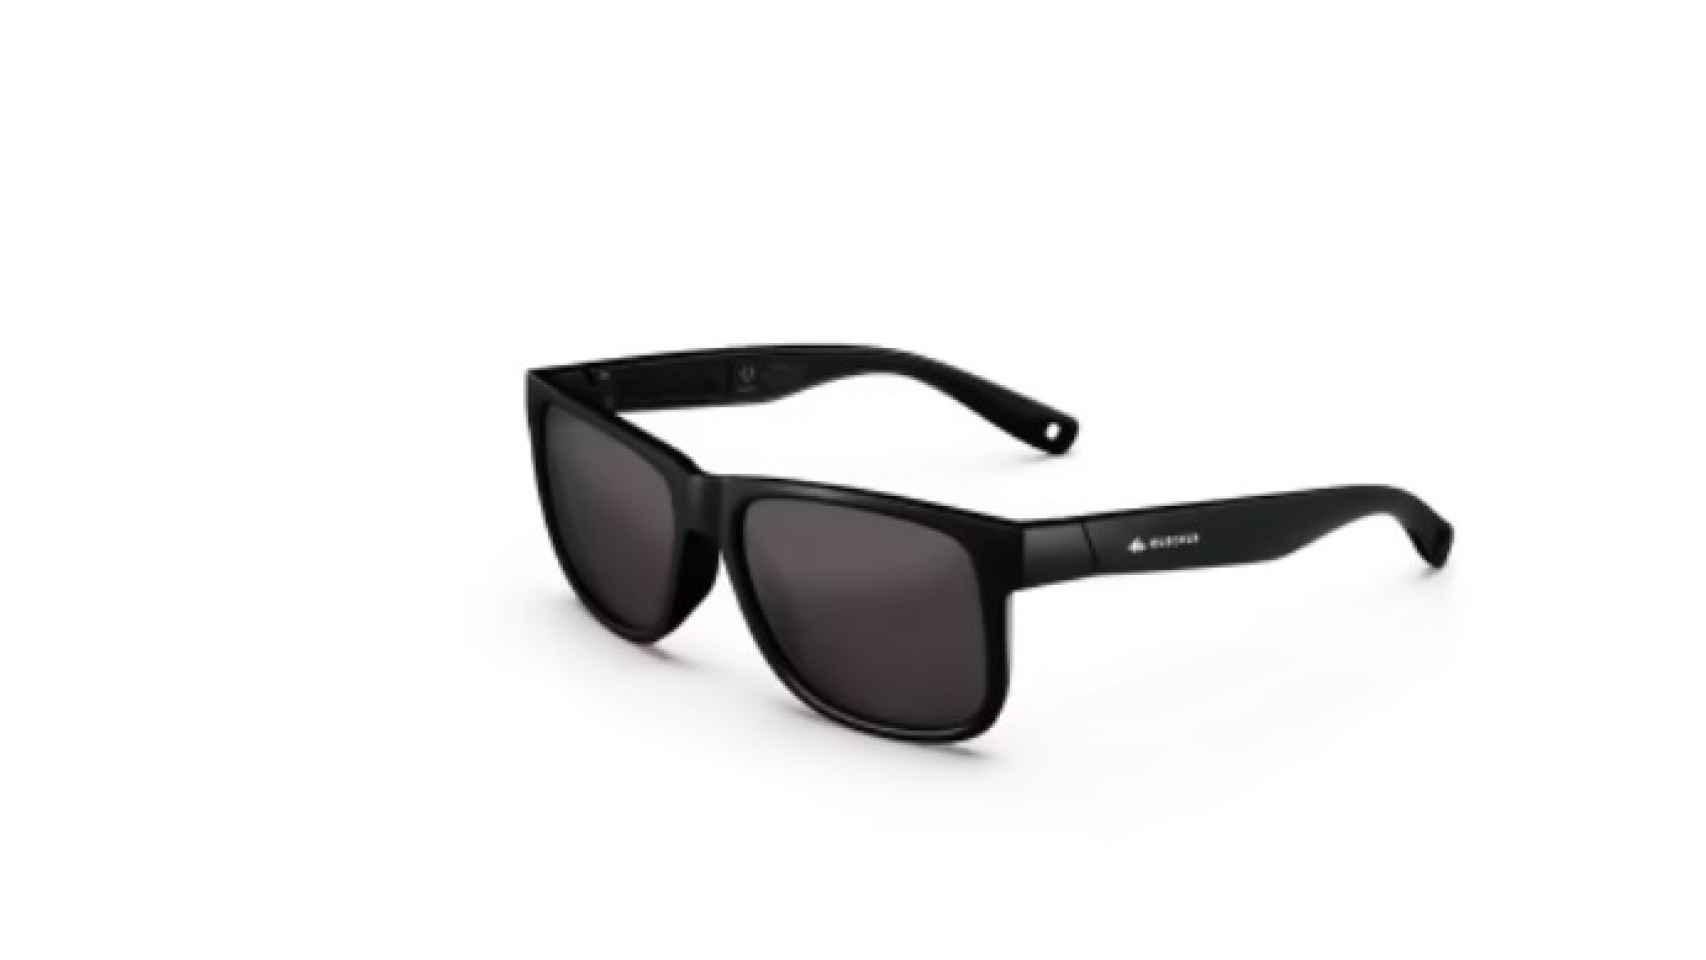 El modelo negro de las nuevas gafas de senderismo de Decathlon.